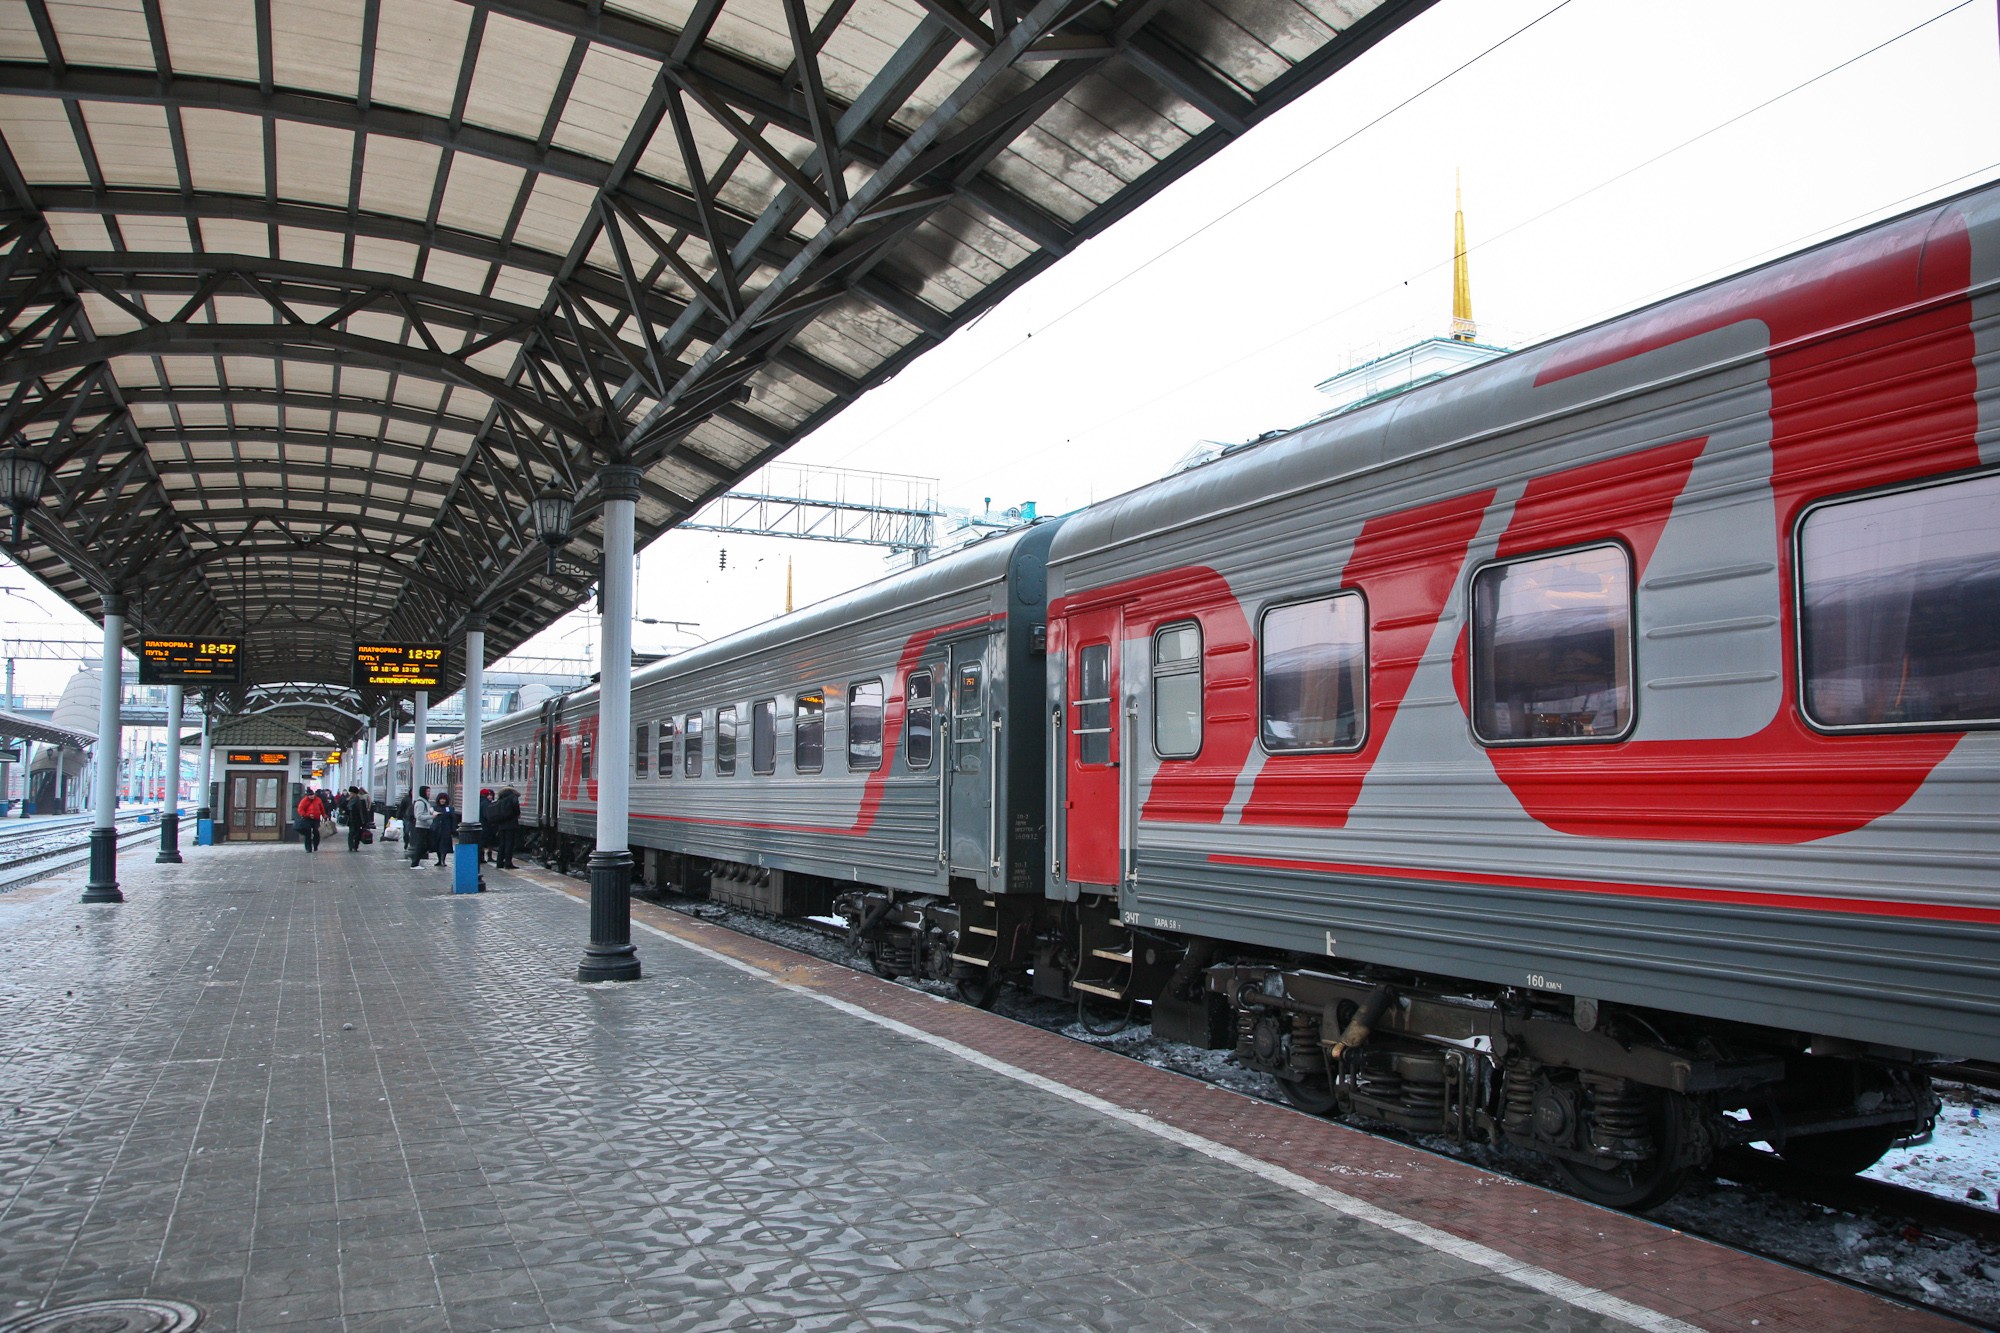  Больше не будут пускать: в РЖД введены новые правила прохода в вагоны поездов  